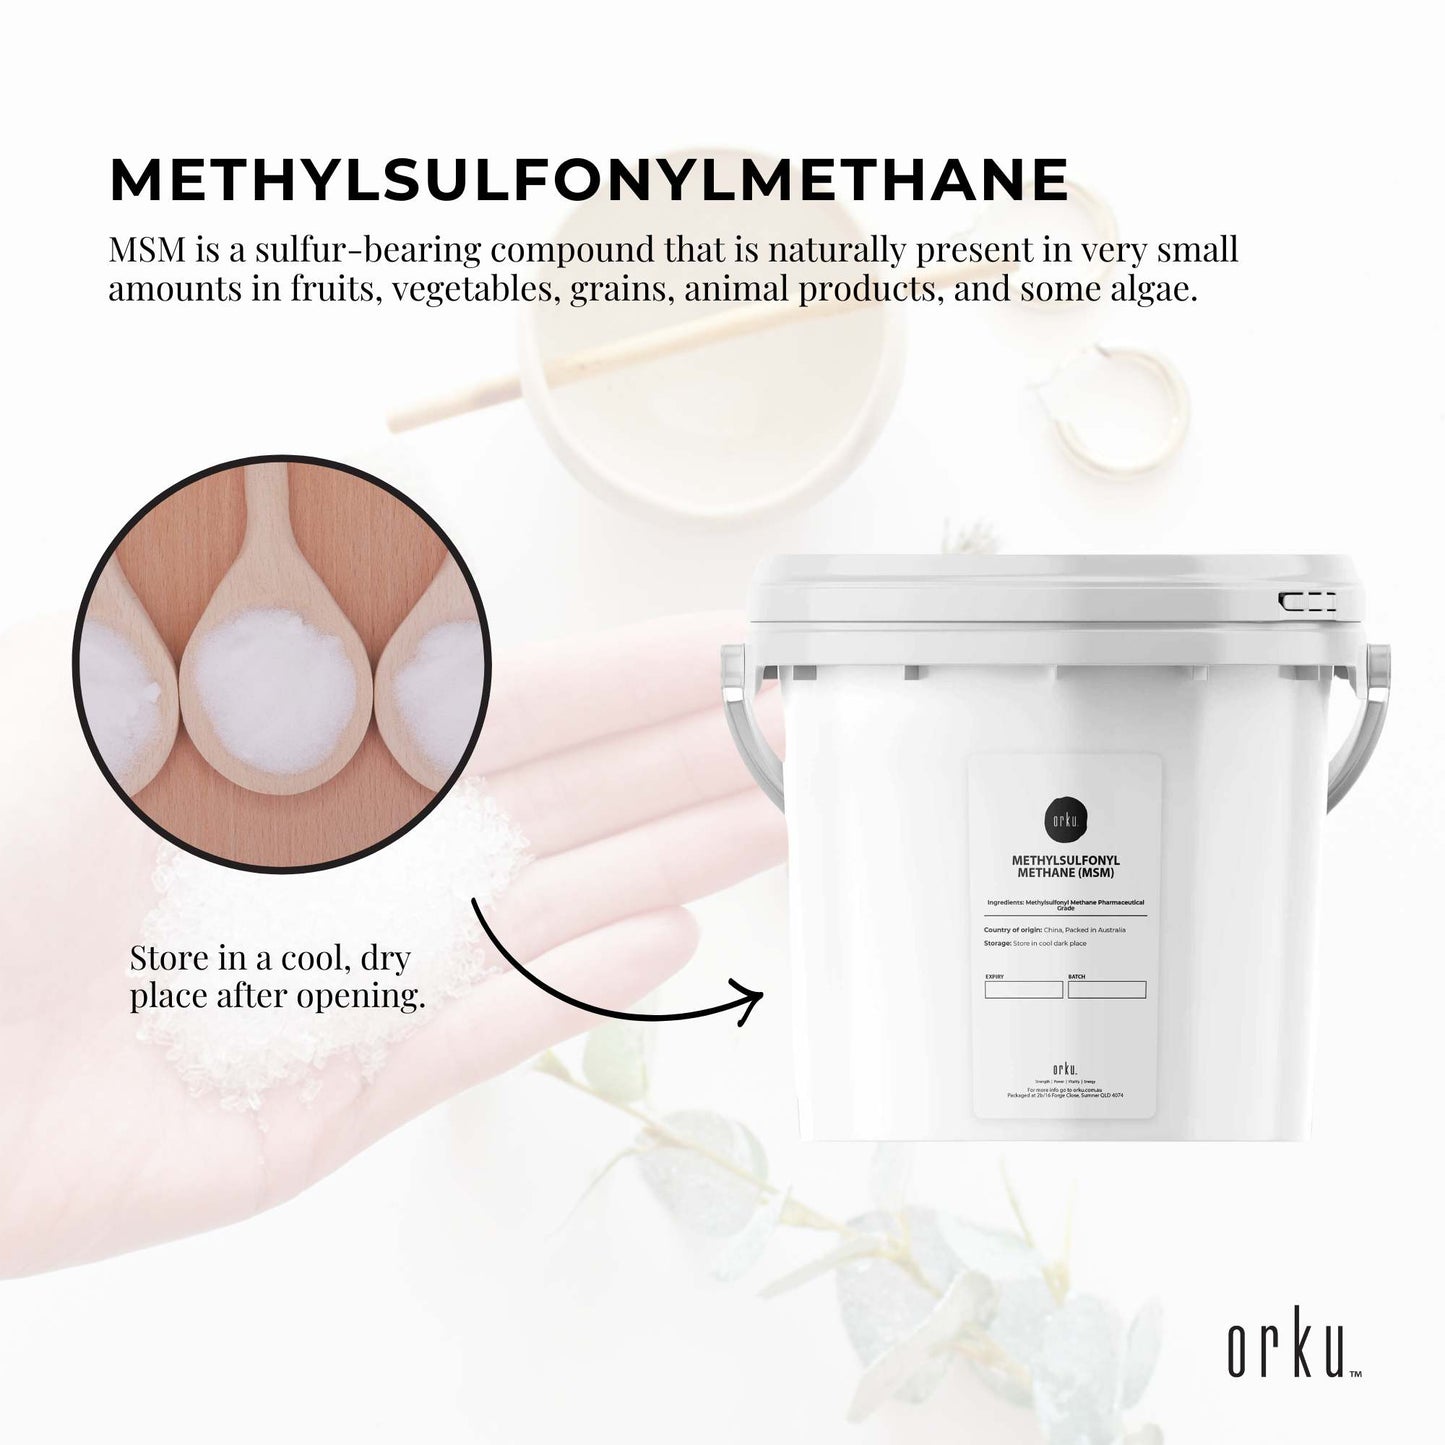 3Kg MSM Powder or Crystals Tub - 99% Pure Methylsulfonylmethane Dimethyl Sulfone